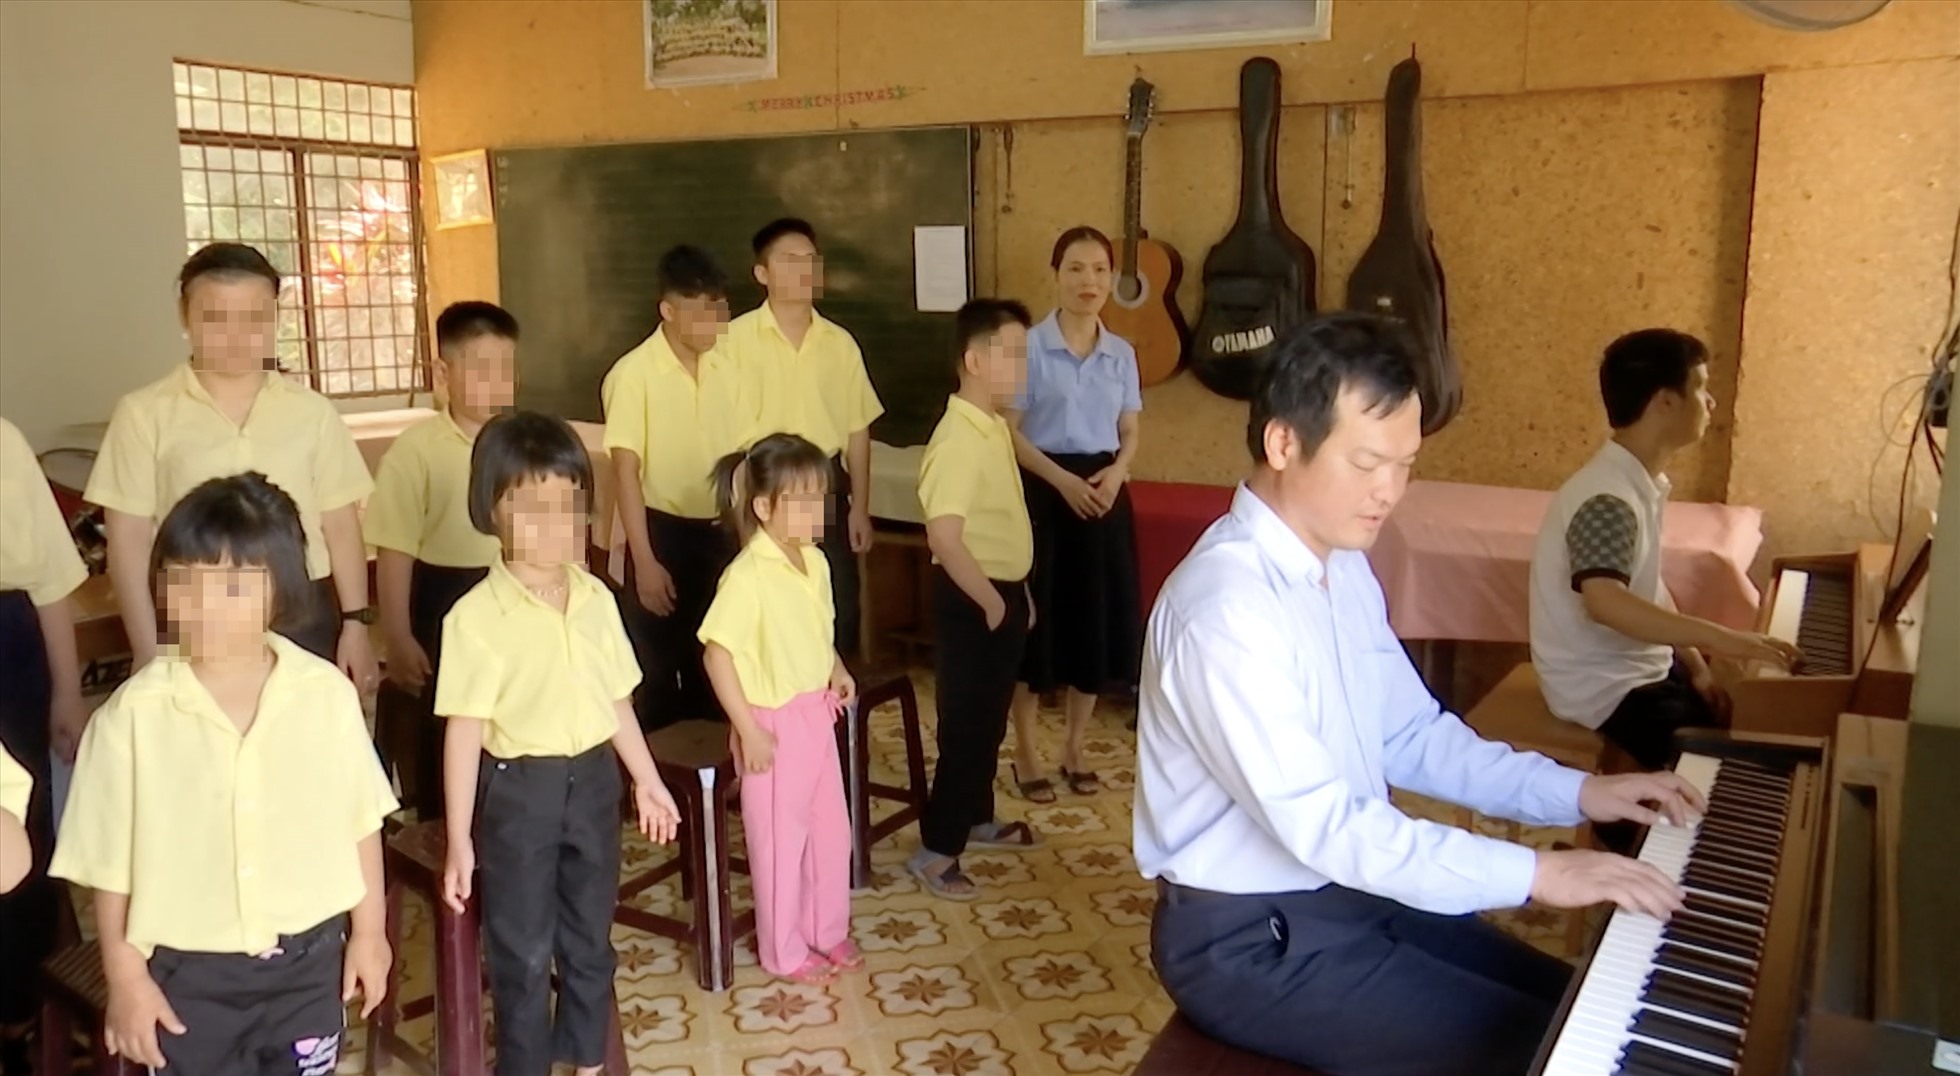 Anh Lê Hoàng Gia Hưng dạy nhạc cho các em nhỏ. Ảnh: Bảo Trung